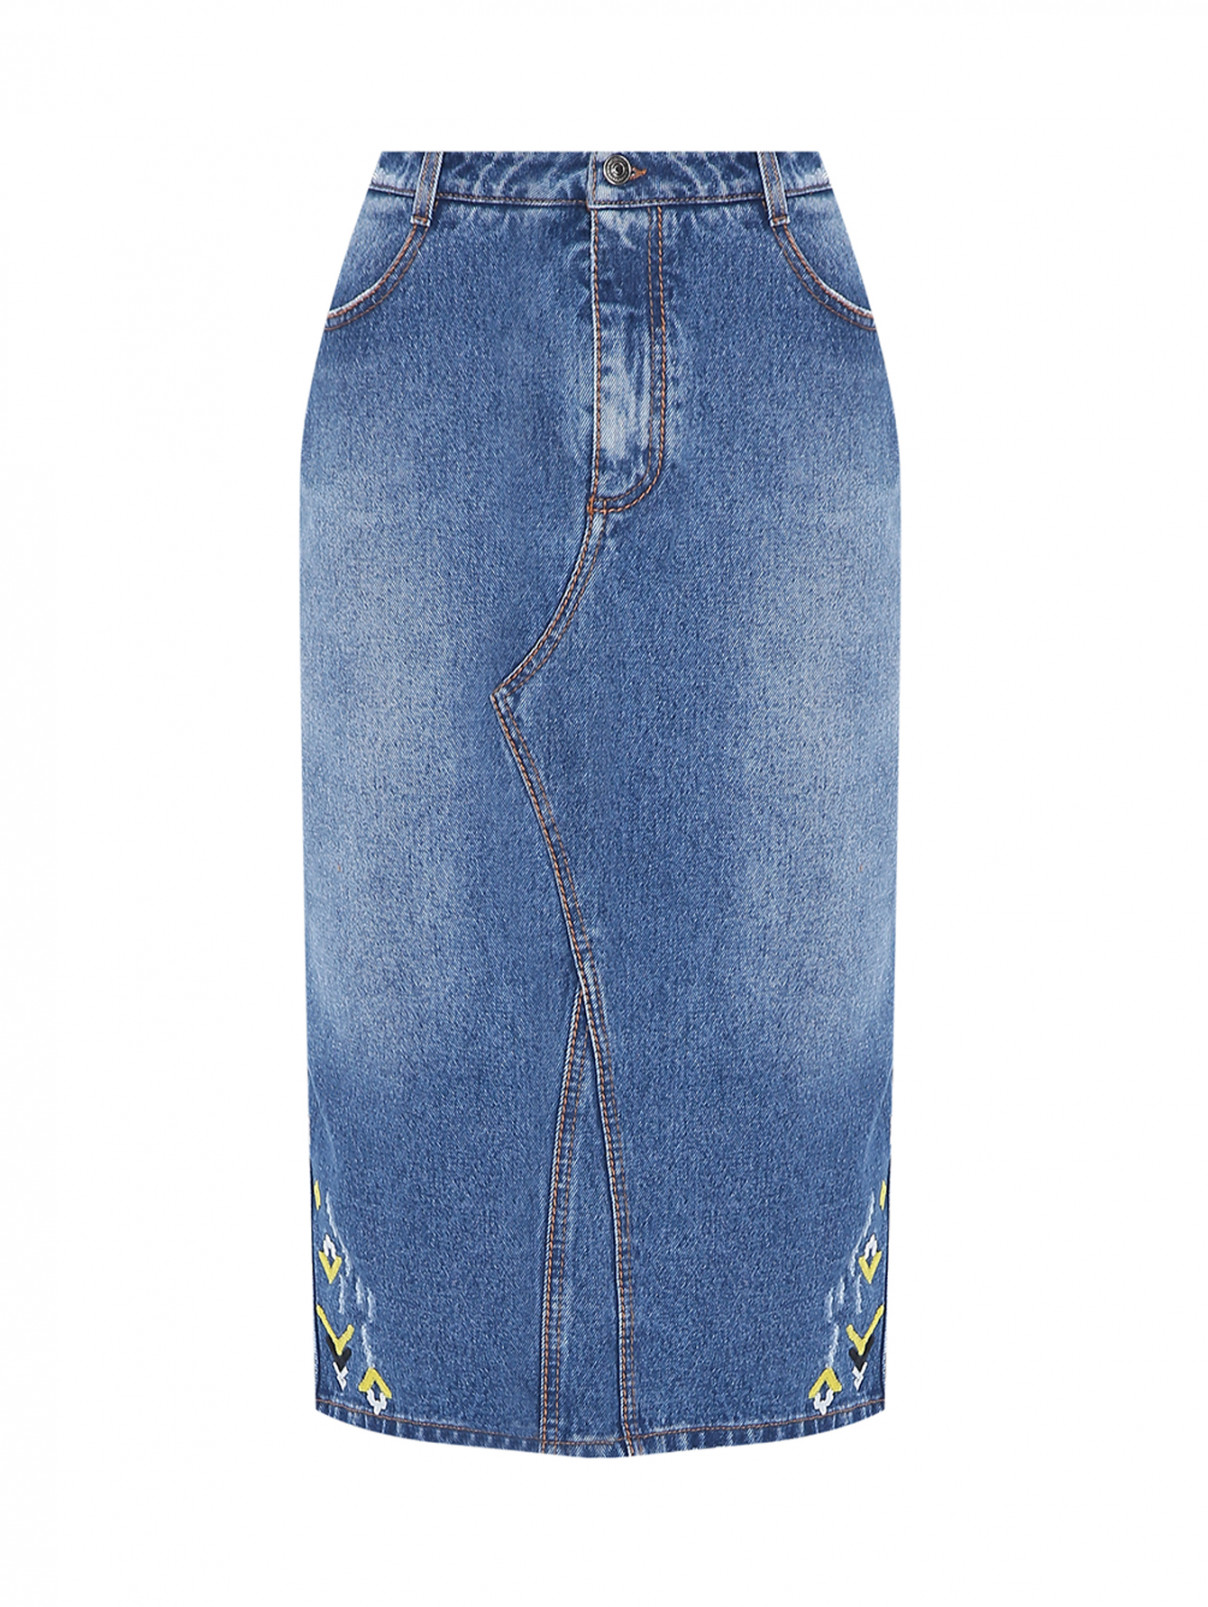 Джинсовая юбка-миди с вышивкой Ermanno Scervino  –  Общий вид  – Цвет:  Синий